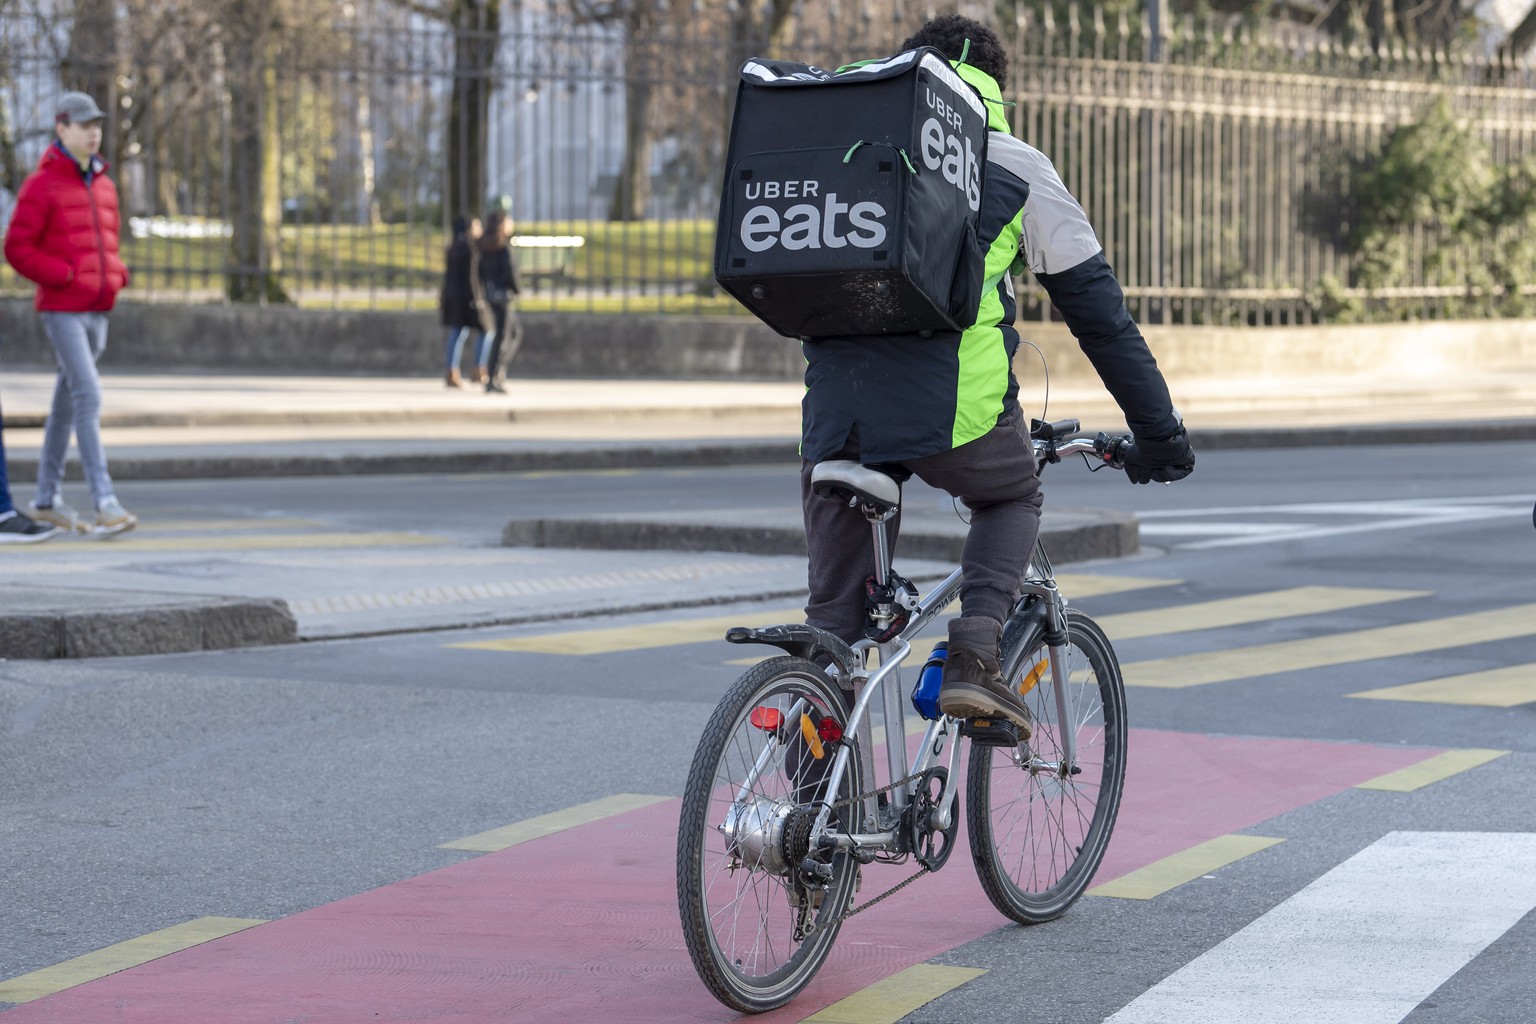 Un coursier a velo de la societe Uber Eats entrain de livrer des repas a domicile, photographie, ce samedi 26 janvier 2019 a Geneve. La livraison de repas par Uber Eats couvre la ville de Geneve et se ...